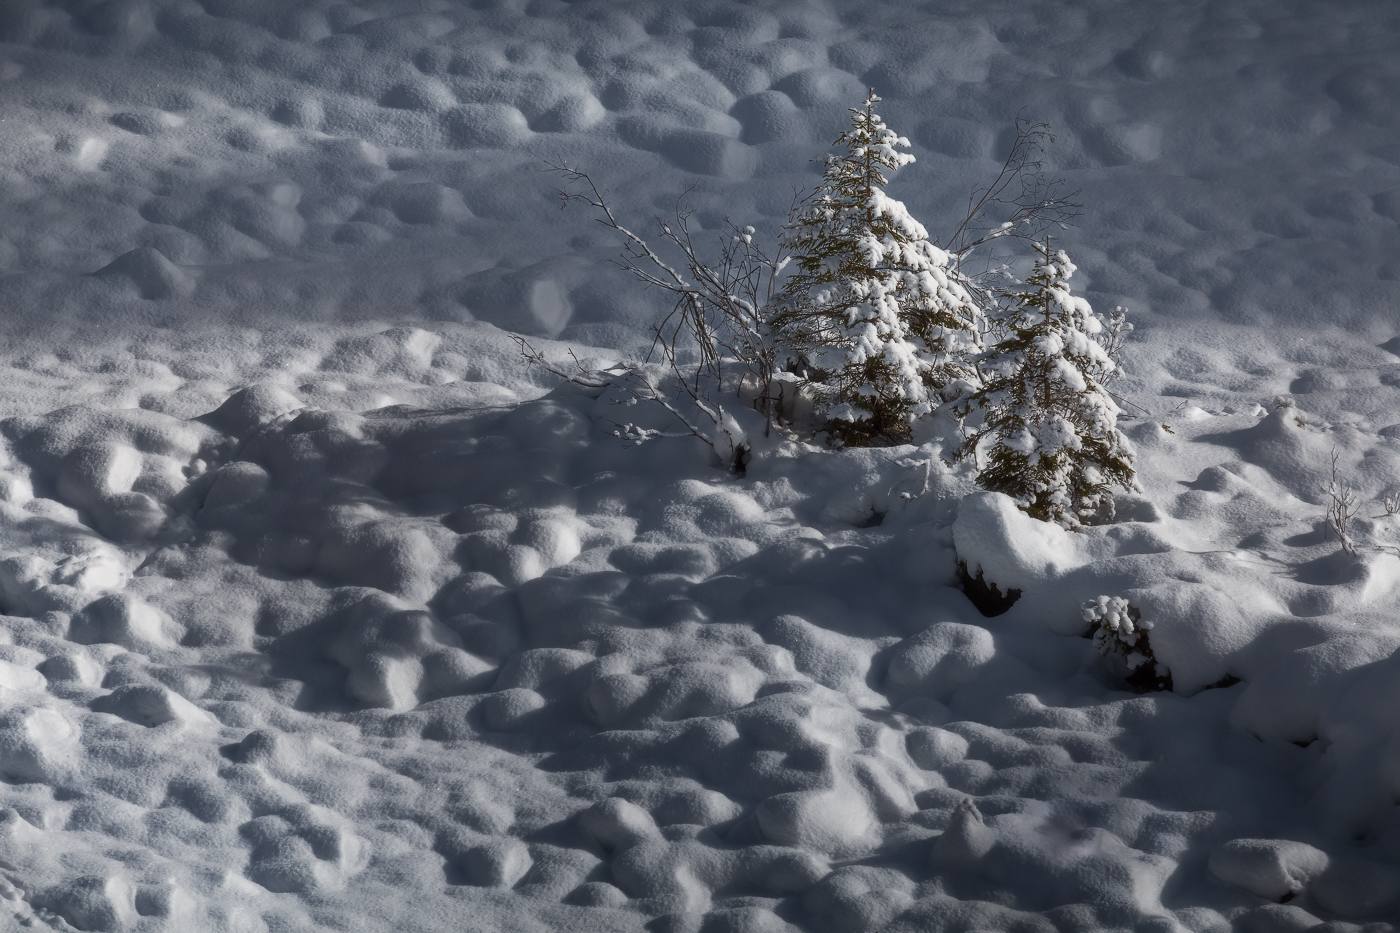 Il sole radente scolpisce le ombre di un inerte greto detritico di fondovalle, appena ricoperto dalla prima nevicata della stagione invernale. La vita, però, è sempre più forte di tutto. Parco Naturale Dolomiti Friulane, Italia.